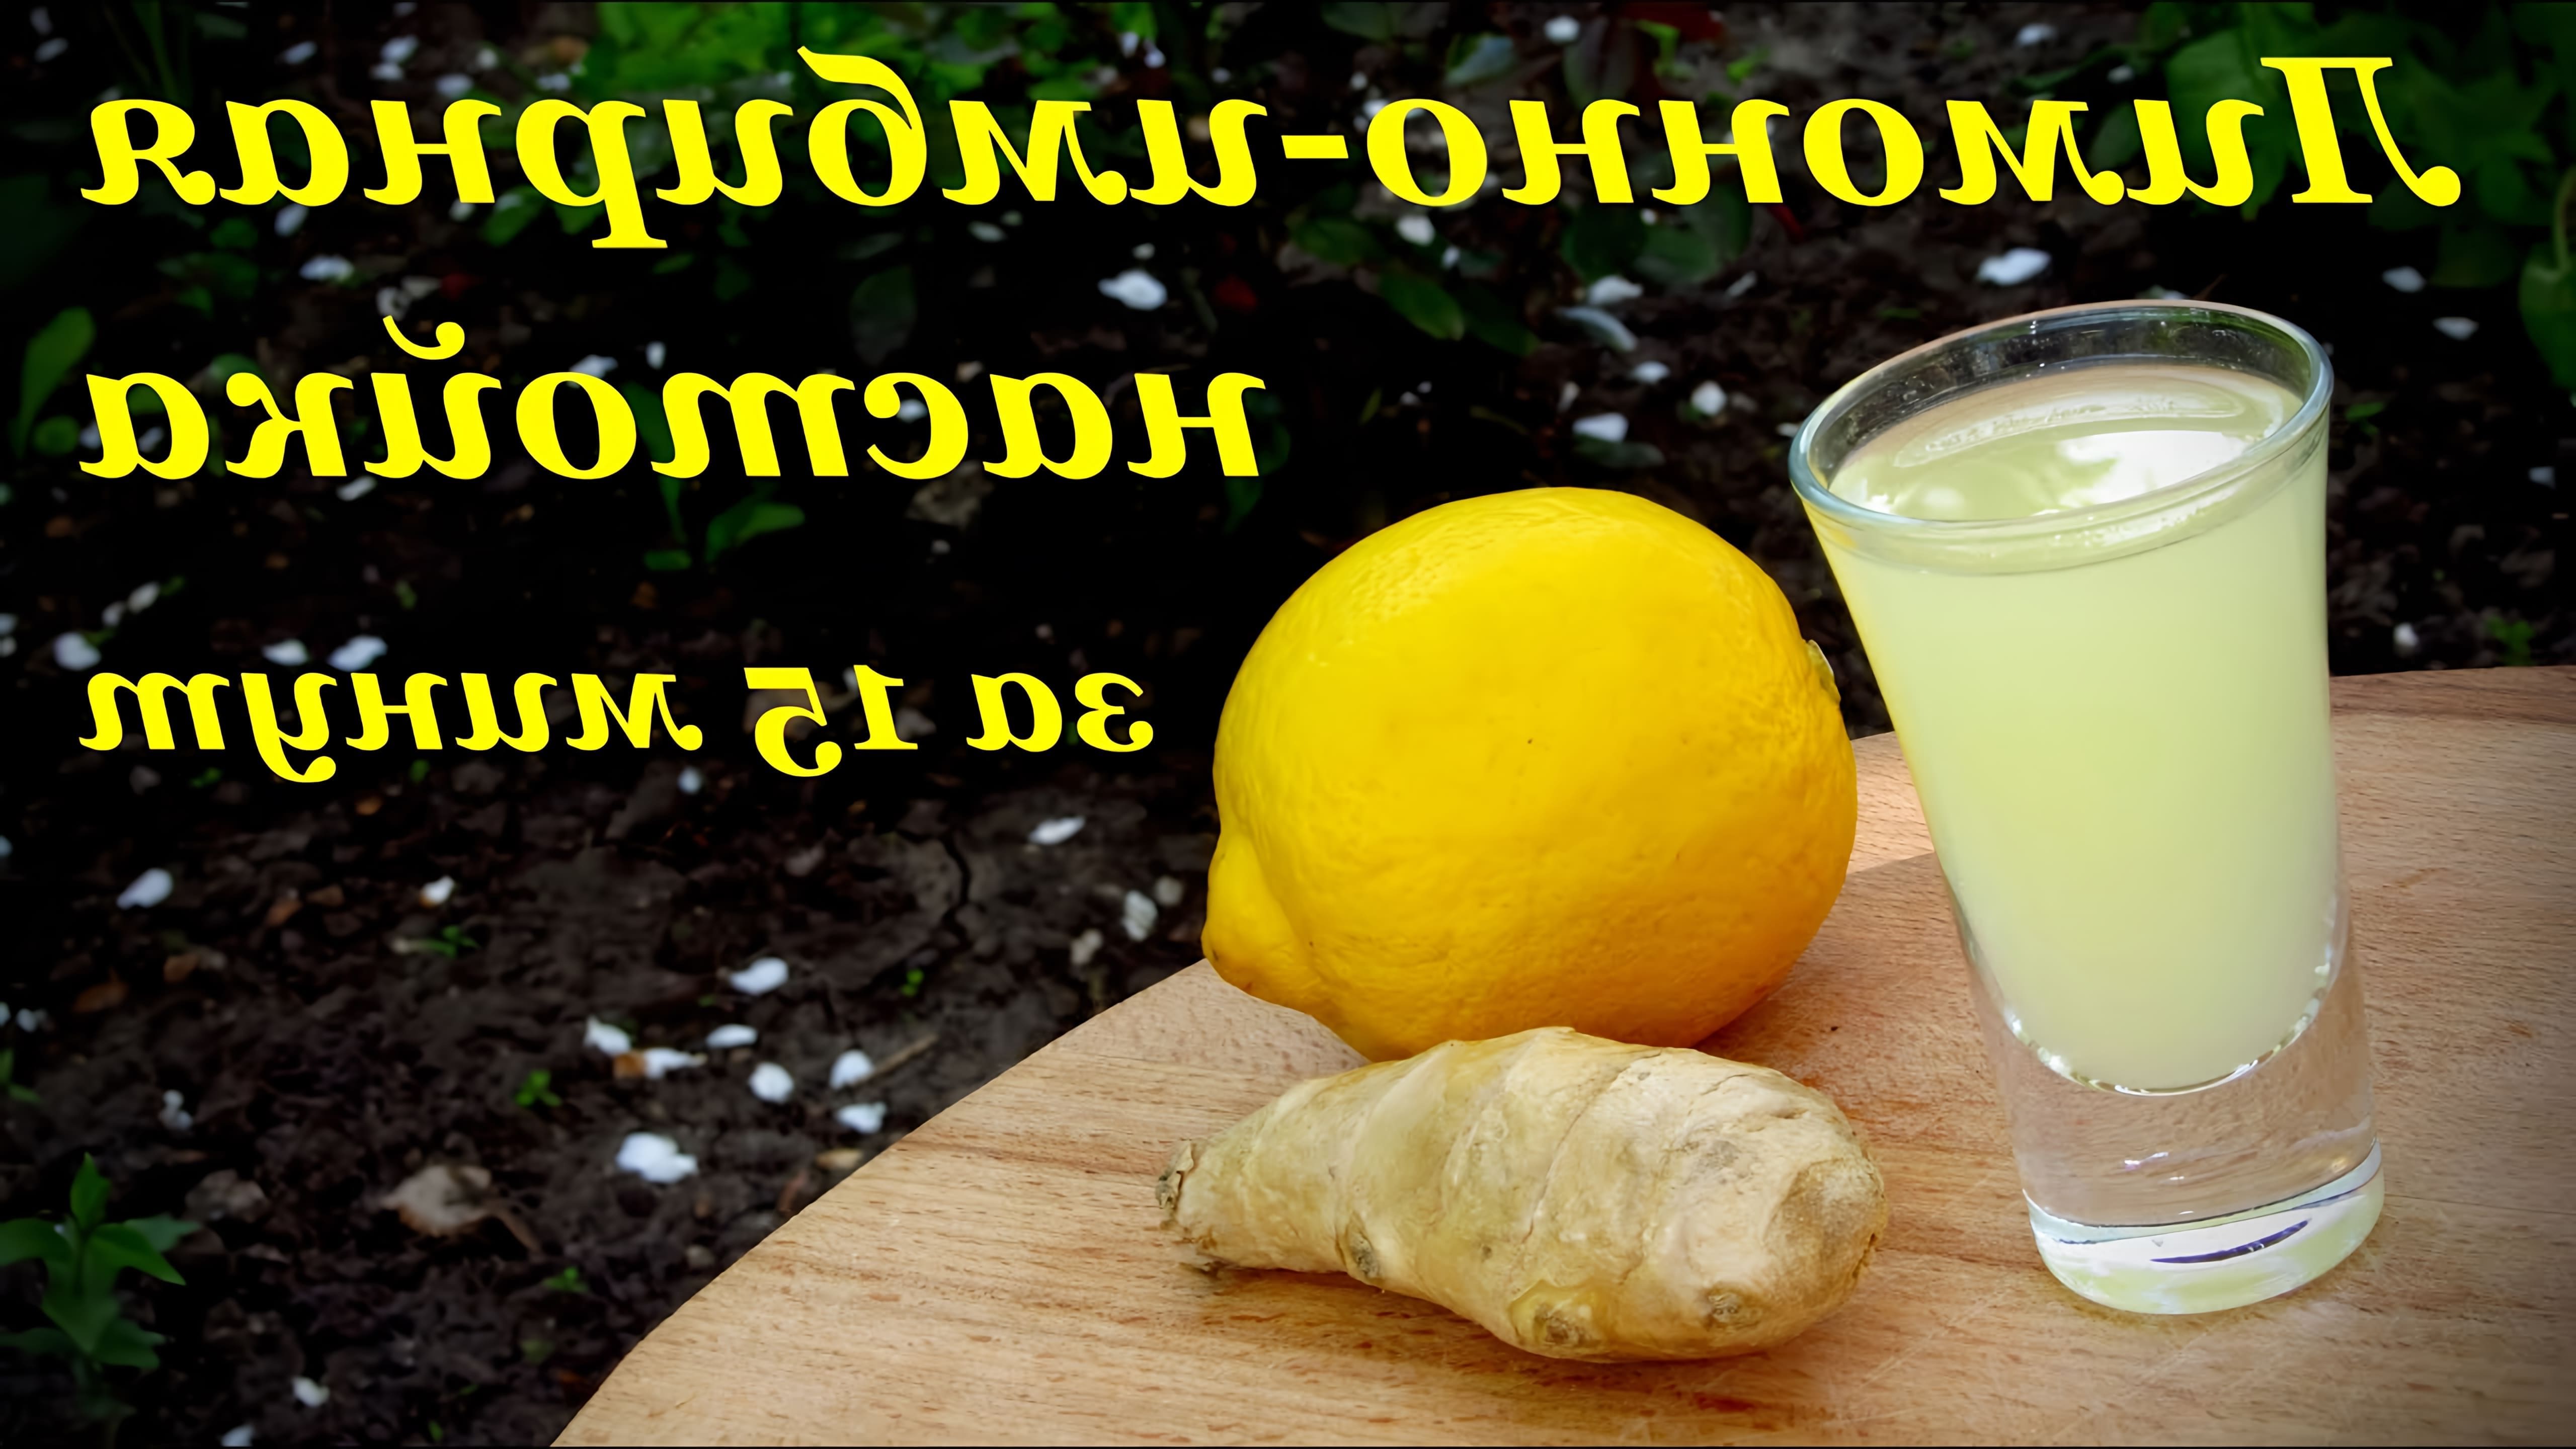 В этом видео демонстрируется процесс приготовления лимонно-имбирной настойки за 15 минут